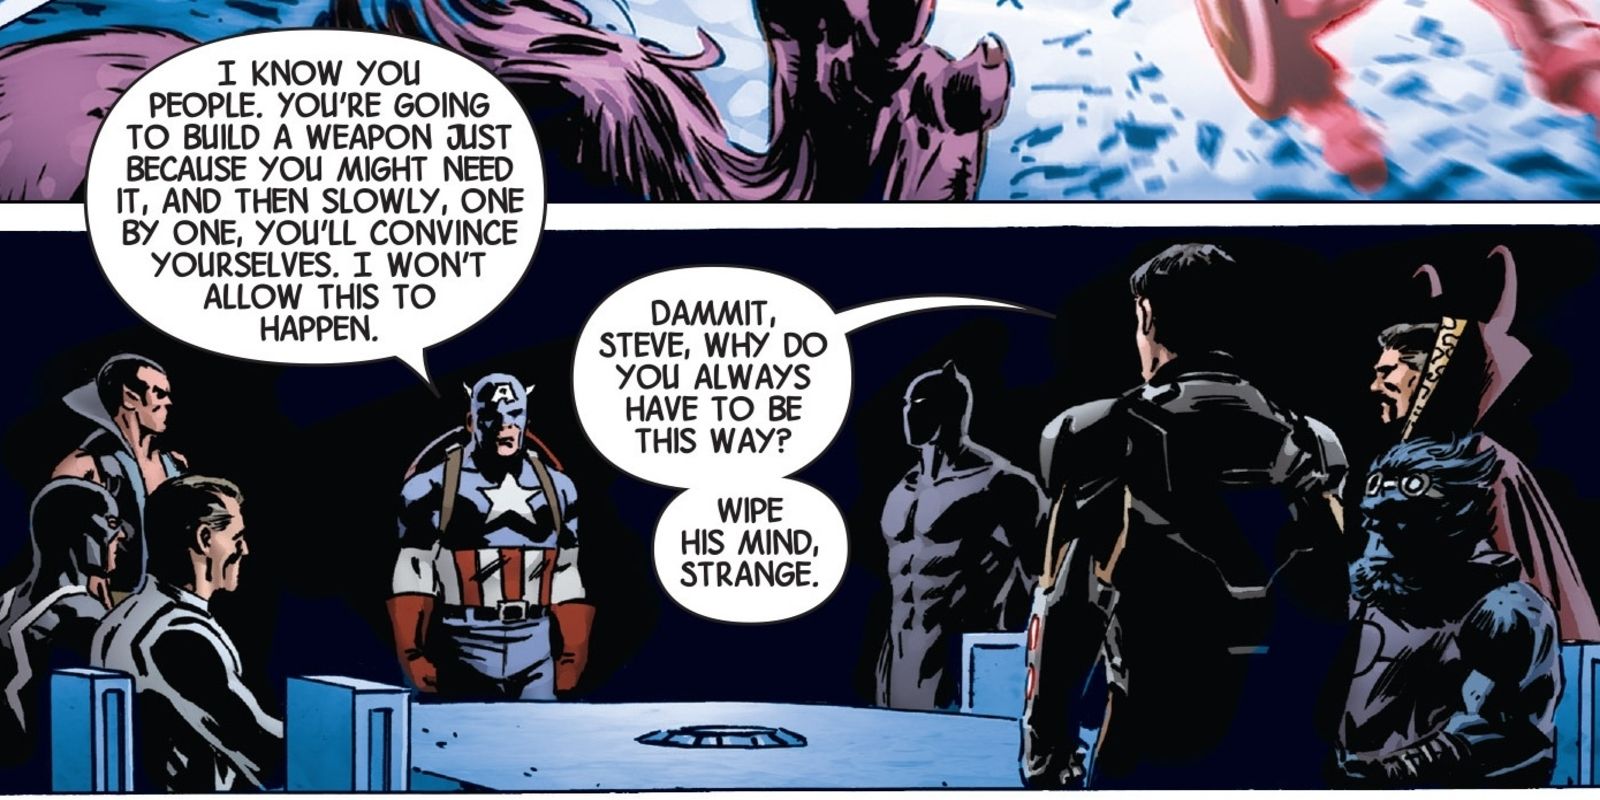 Captain America challenges the Illuminati's plans